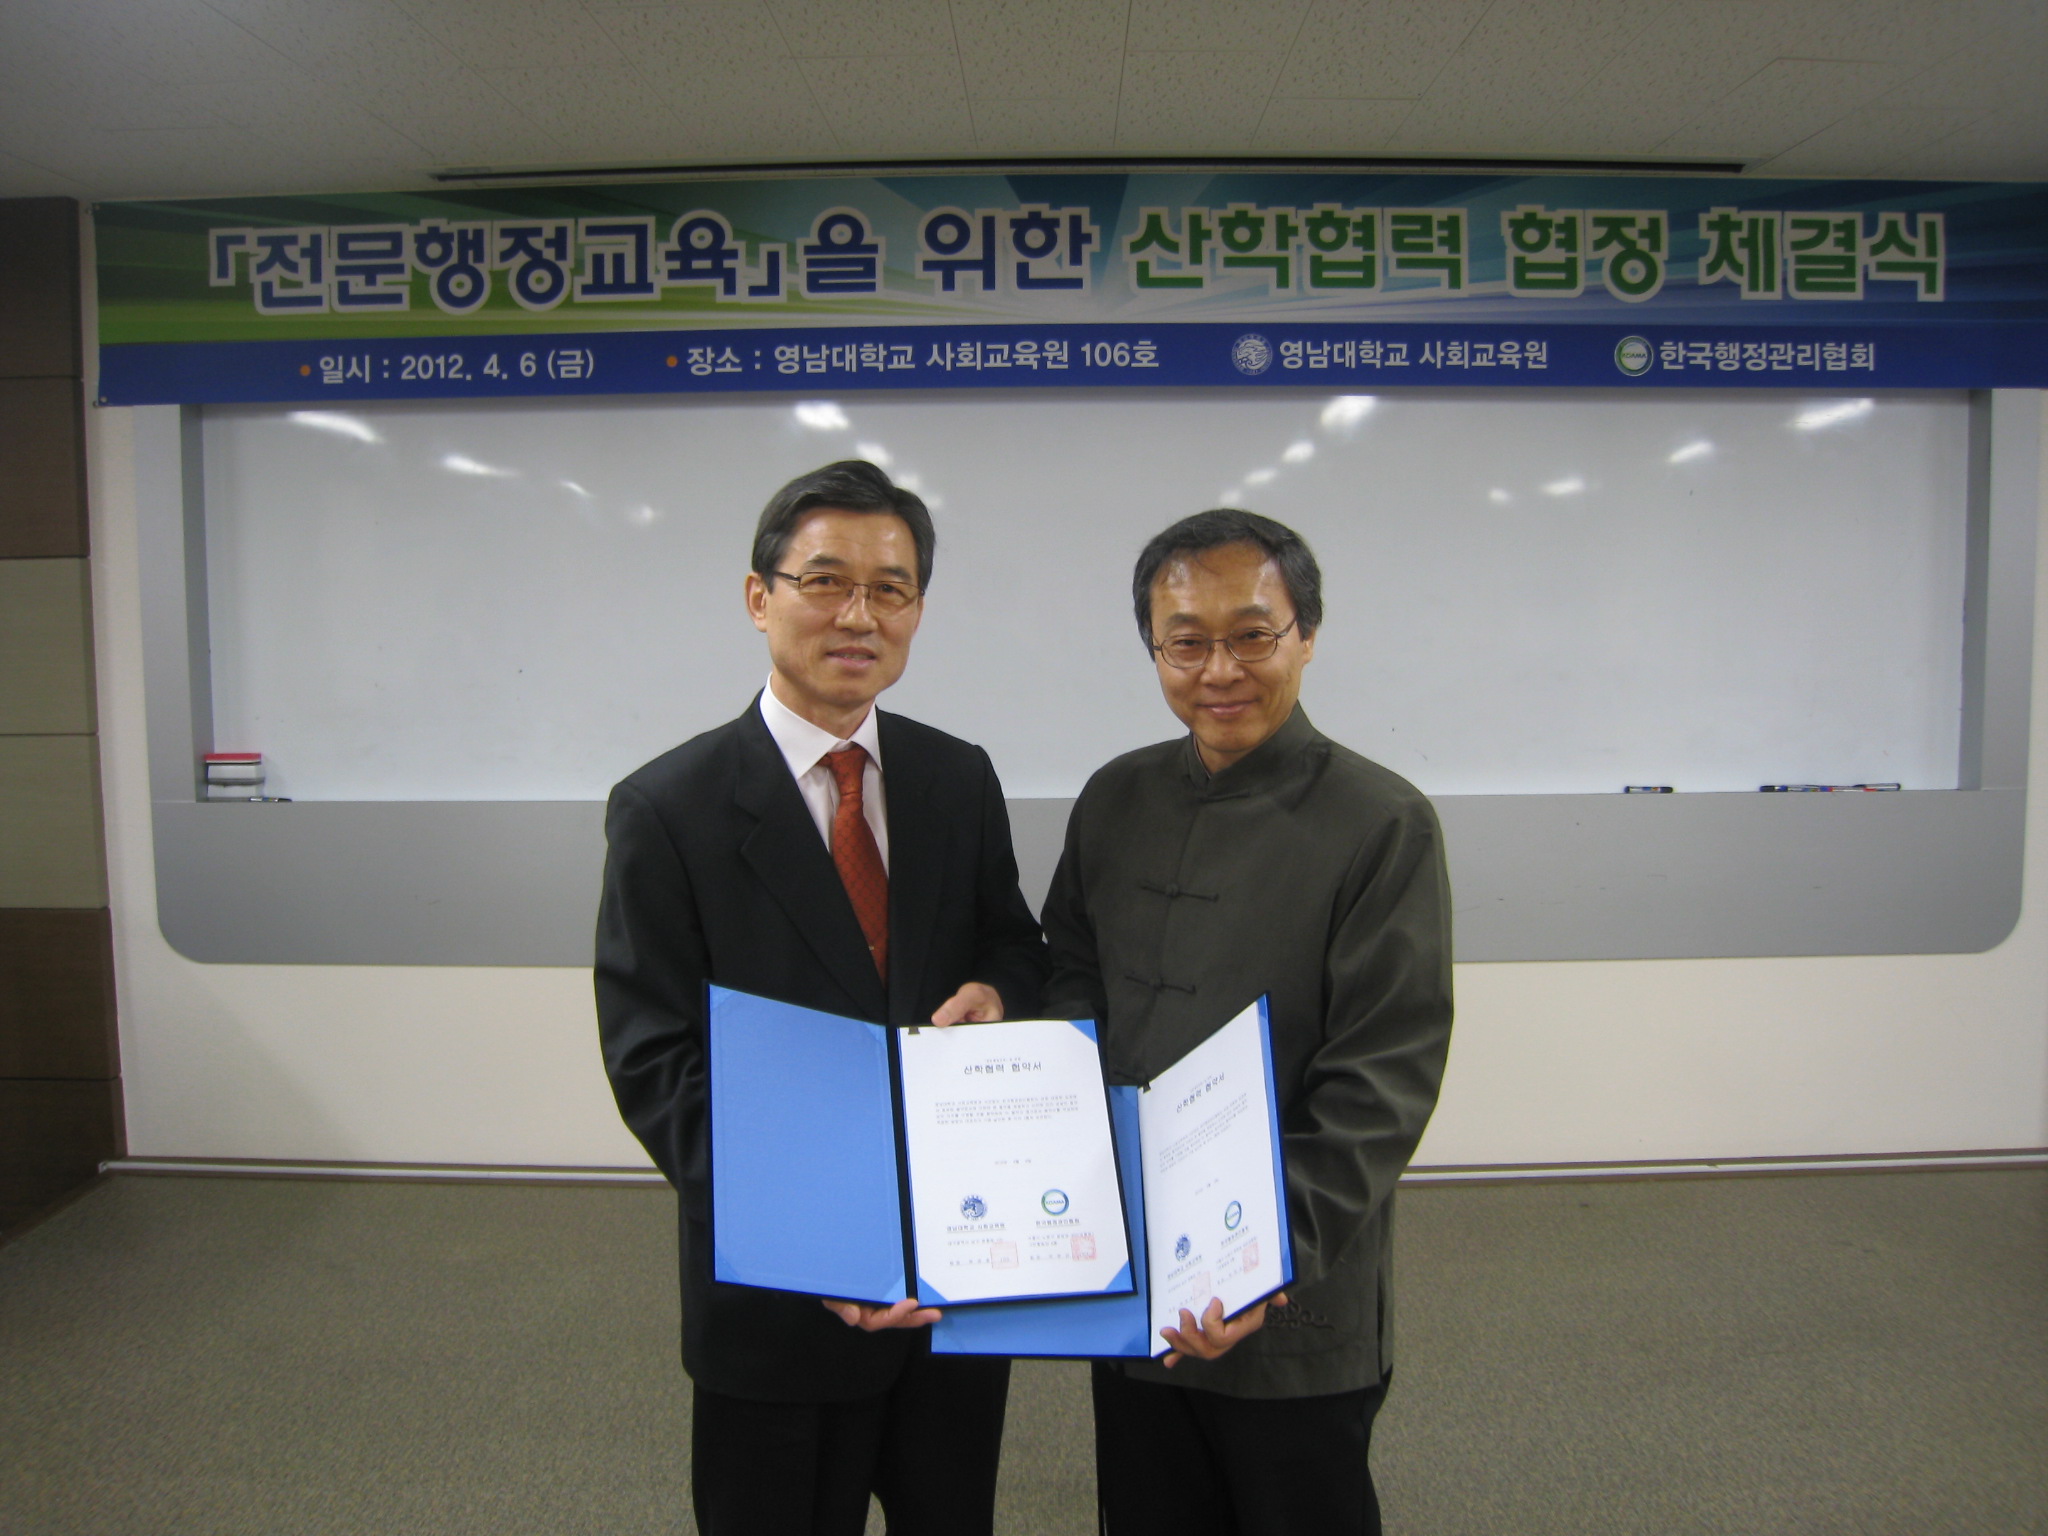 한국행정관리협회와 산학협력 협정 체결